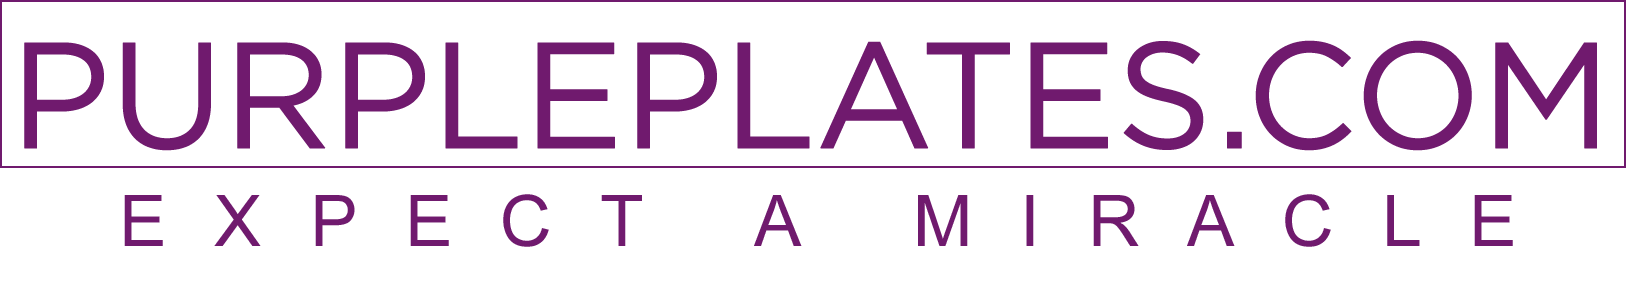 Purpleplates.com